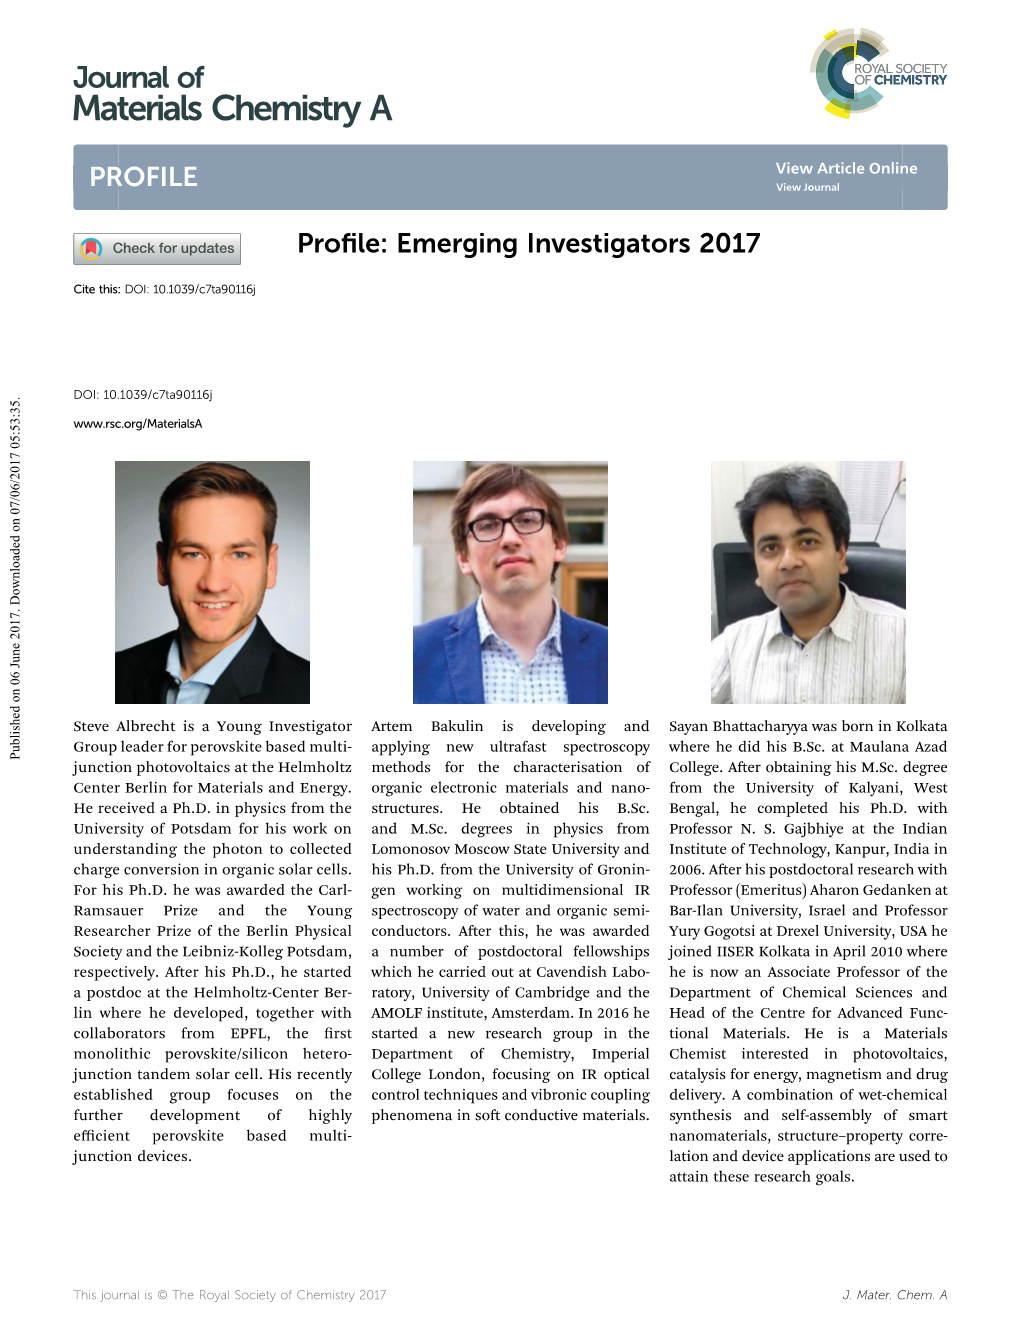 Emerging Investigators 2017